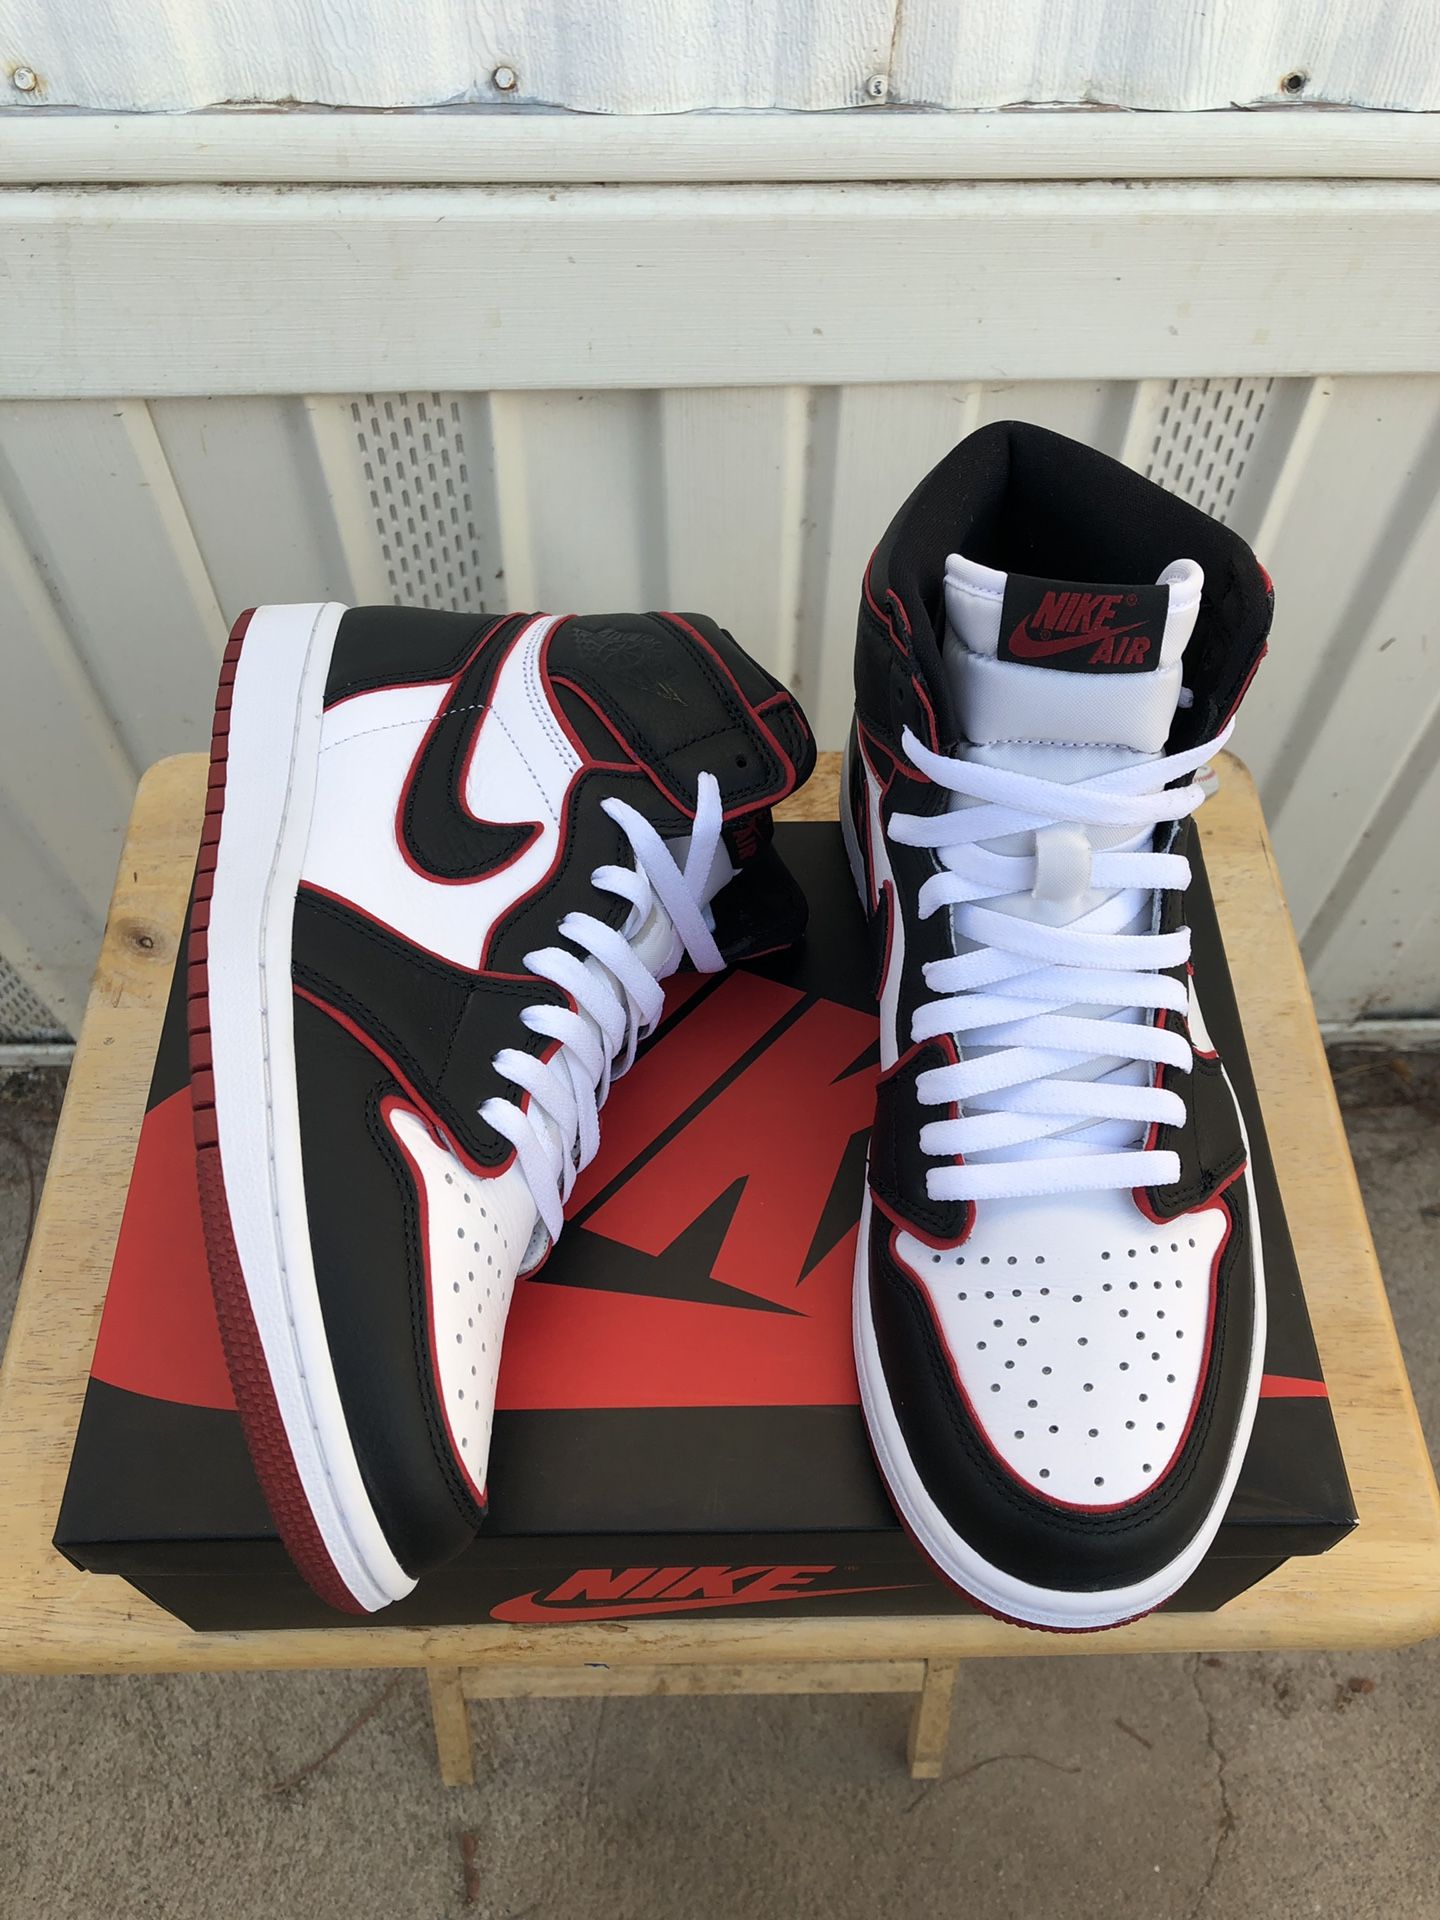 Air Jordan 1 high OG “bloodline” size 9.5 mens